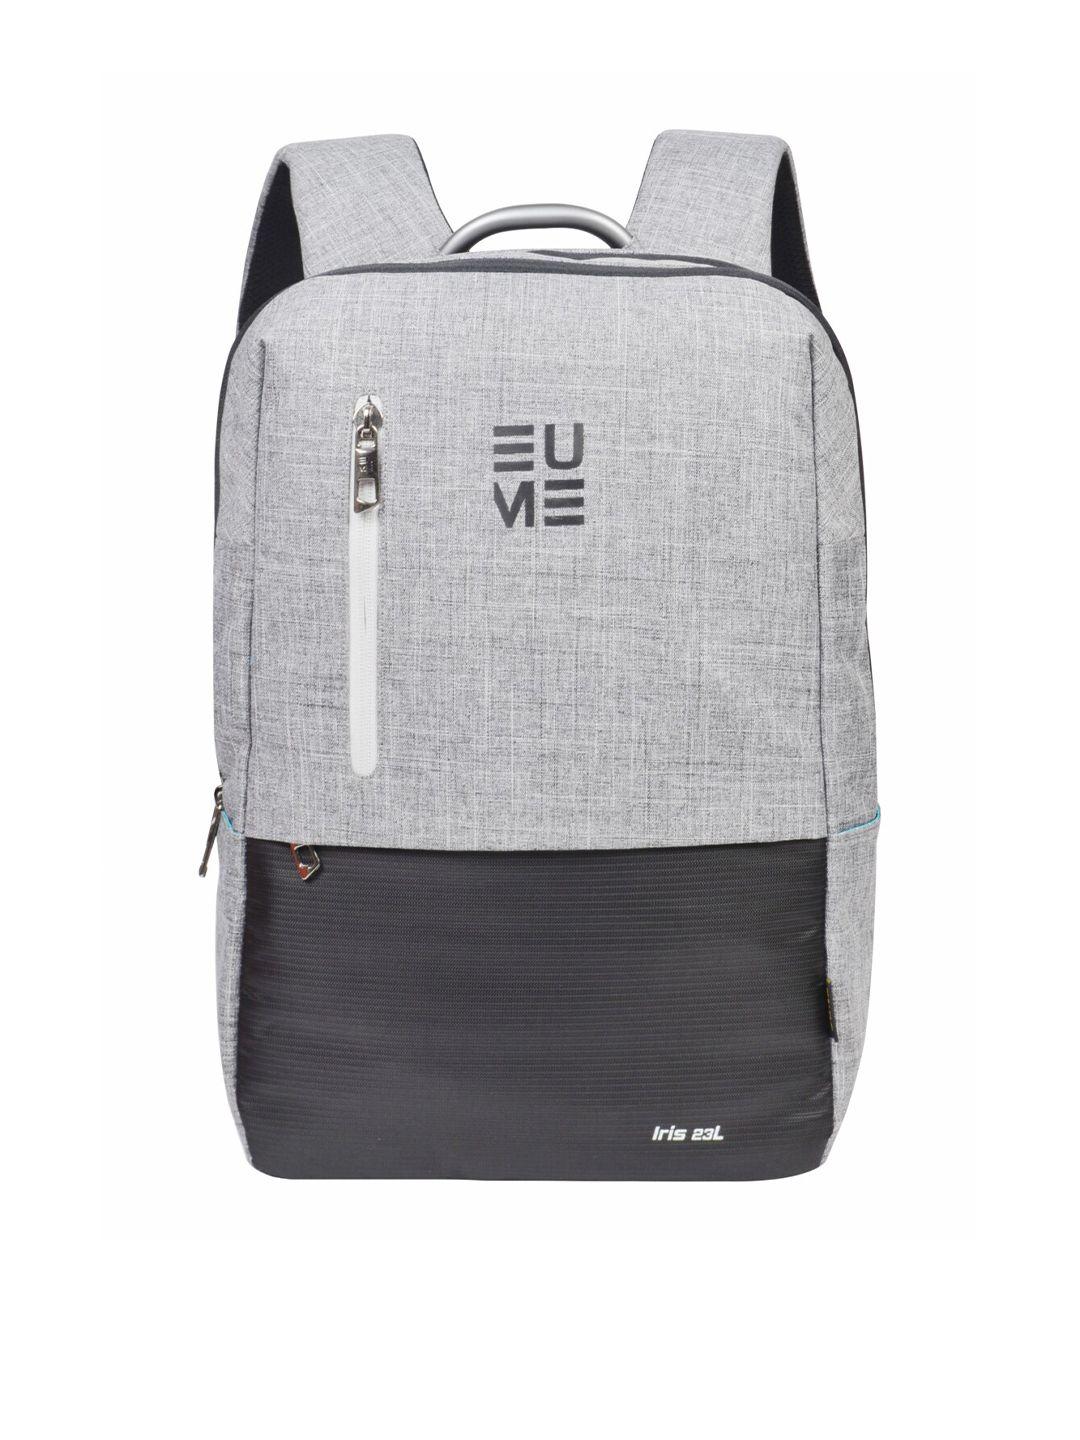 eume-unisex-grey-&-black-colourblocked-backpack